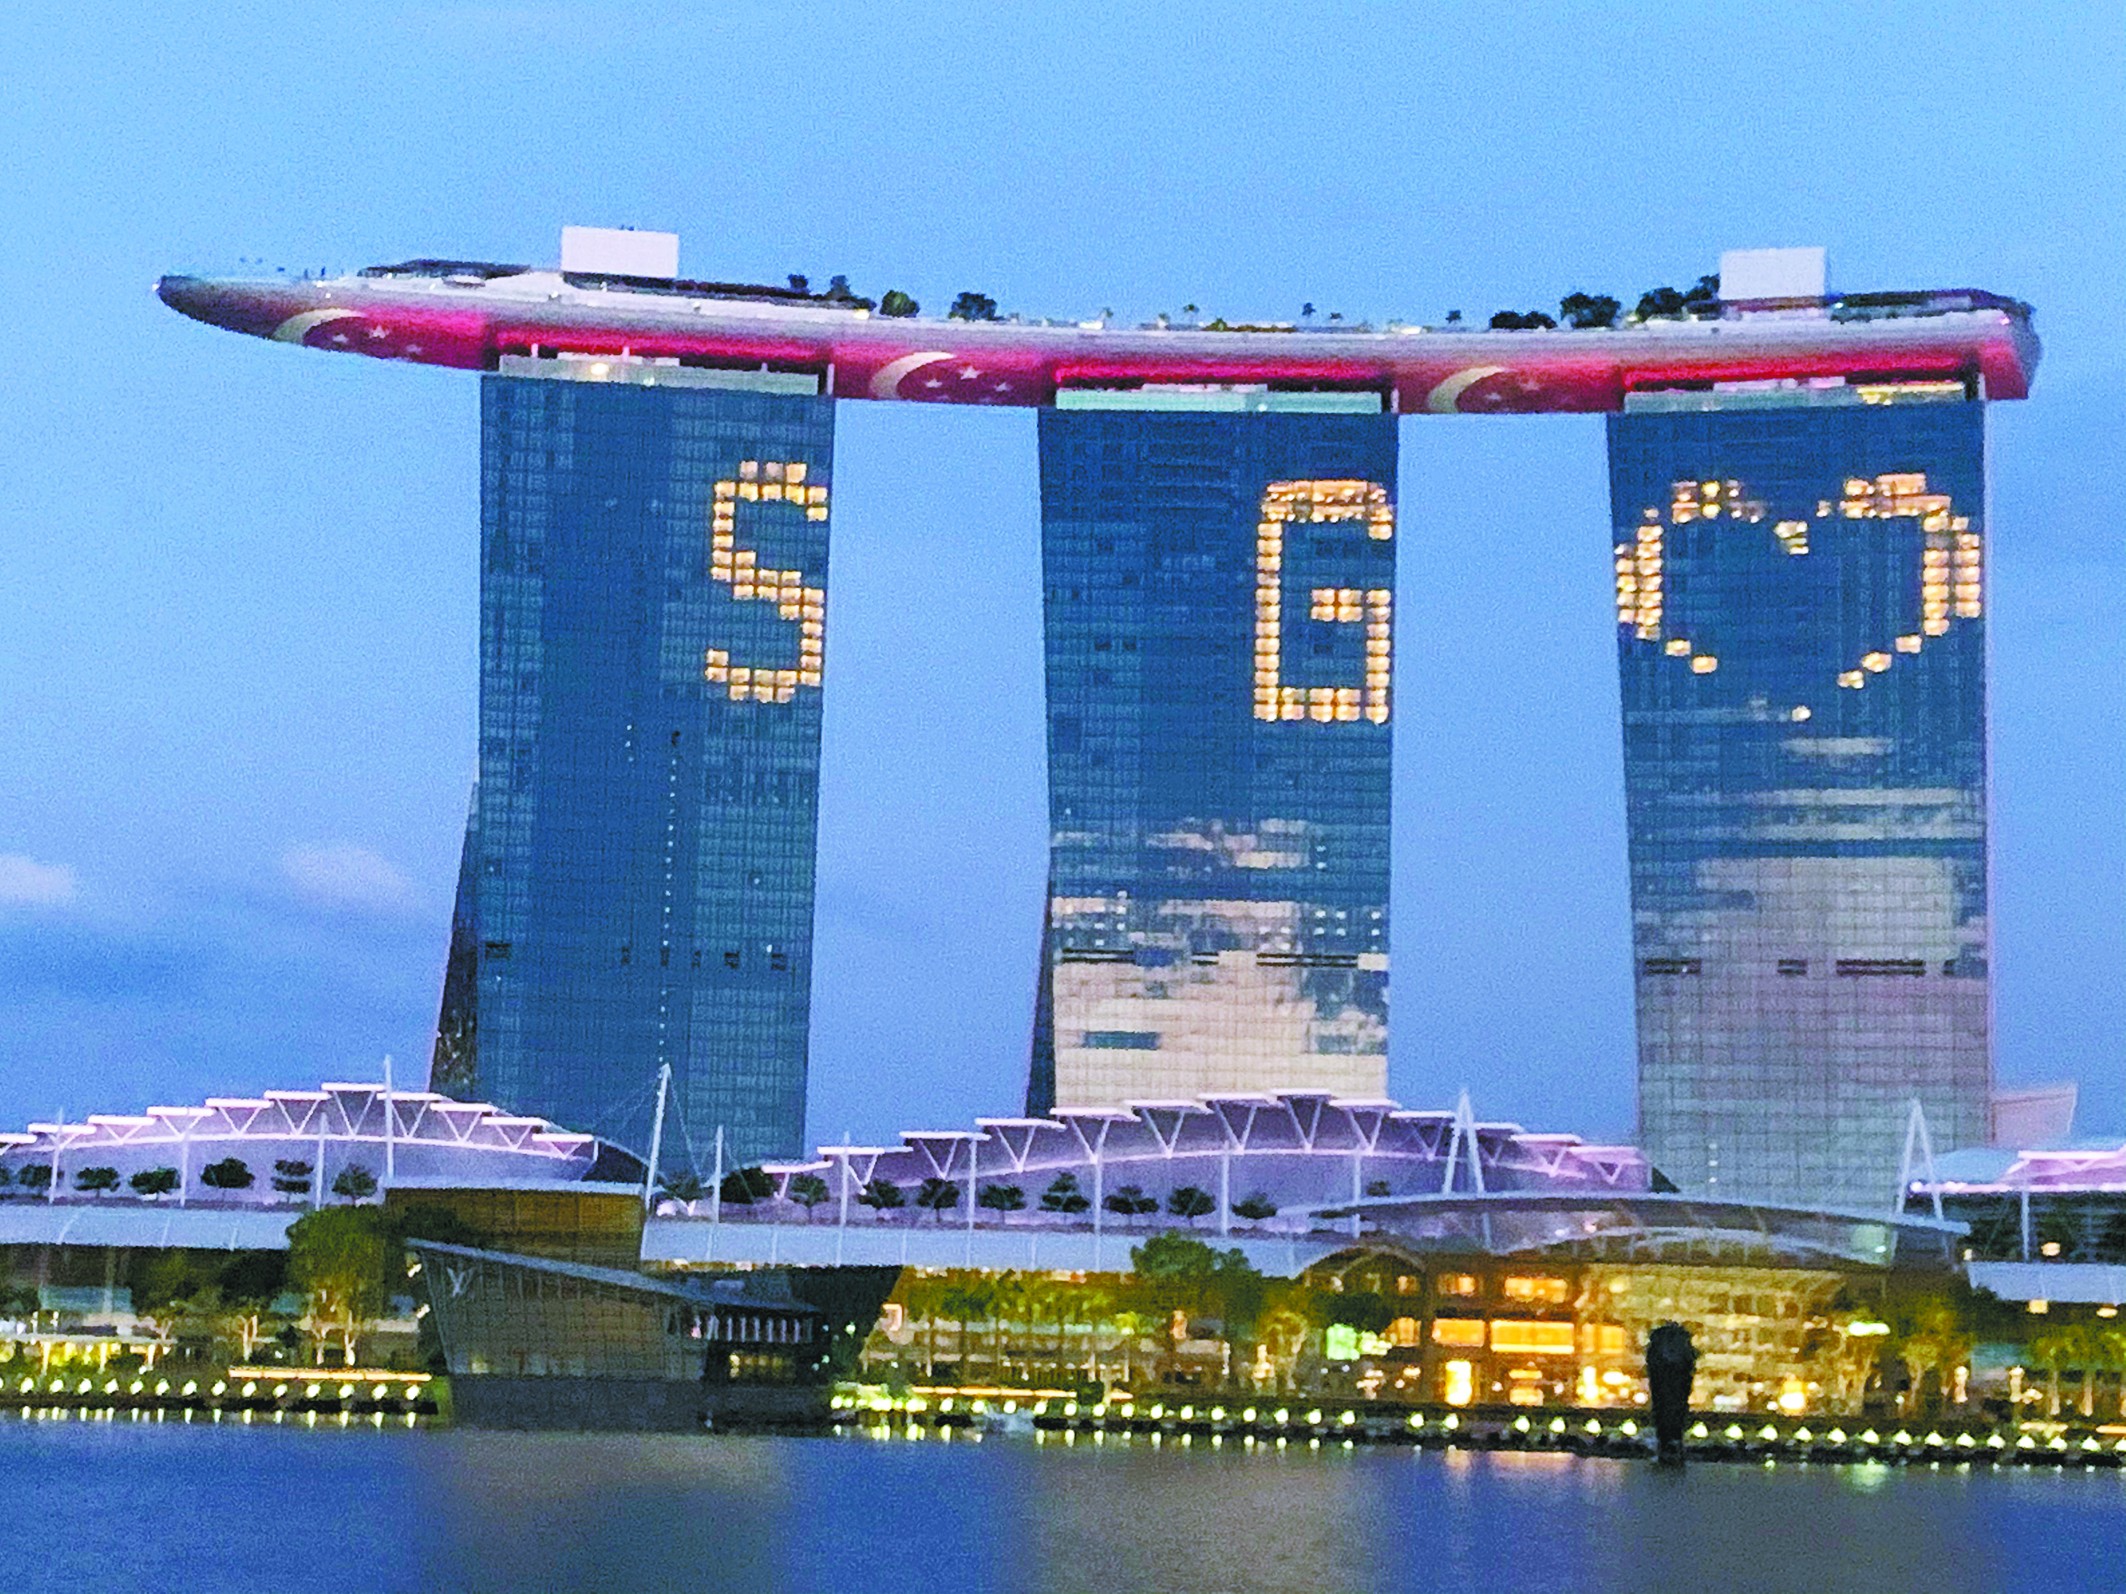 金沙娱城乐app下载新加坡金沙综合娱乐城亮灯抗疫